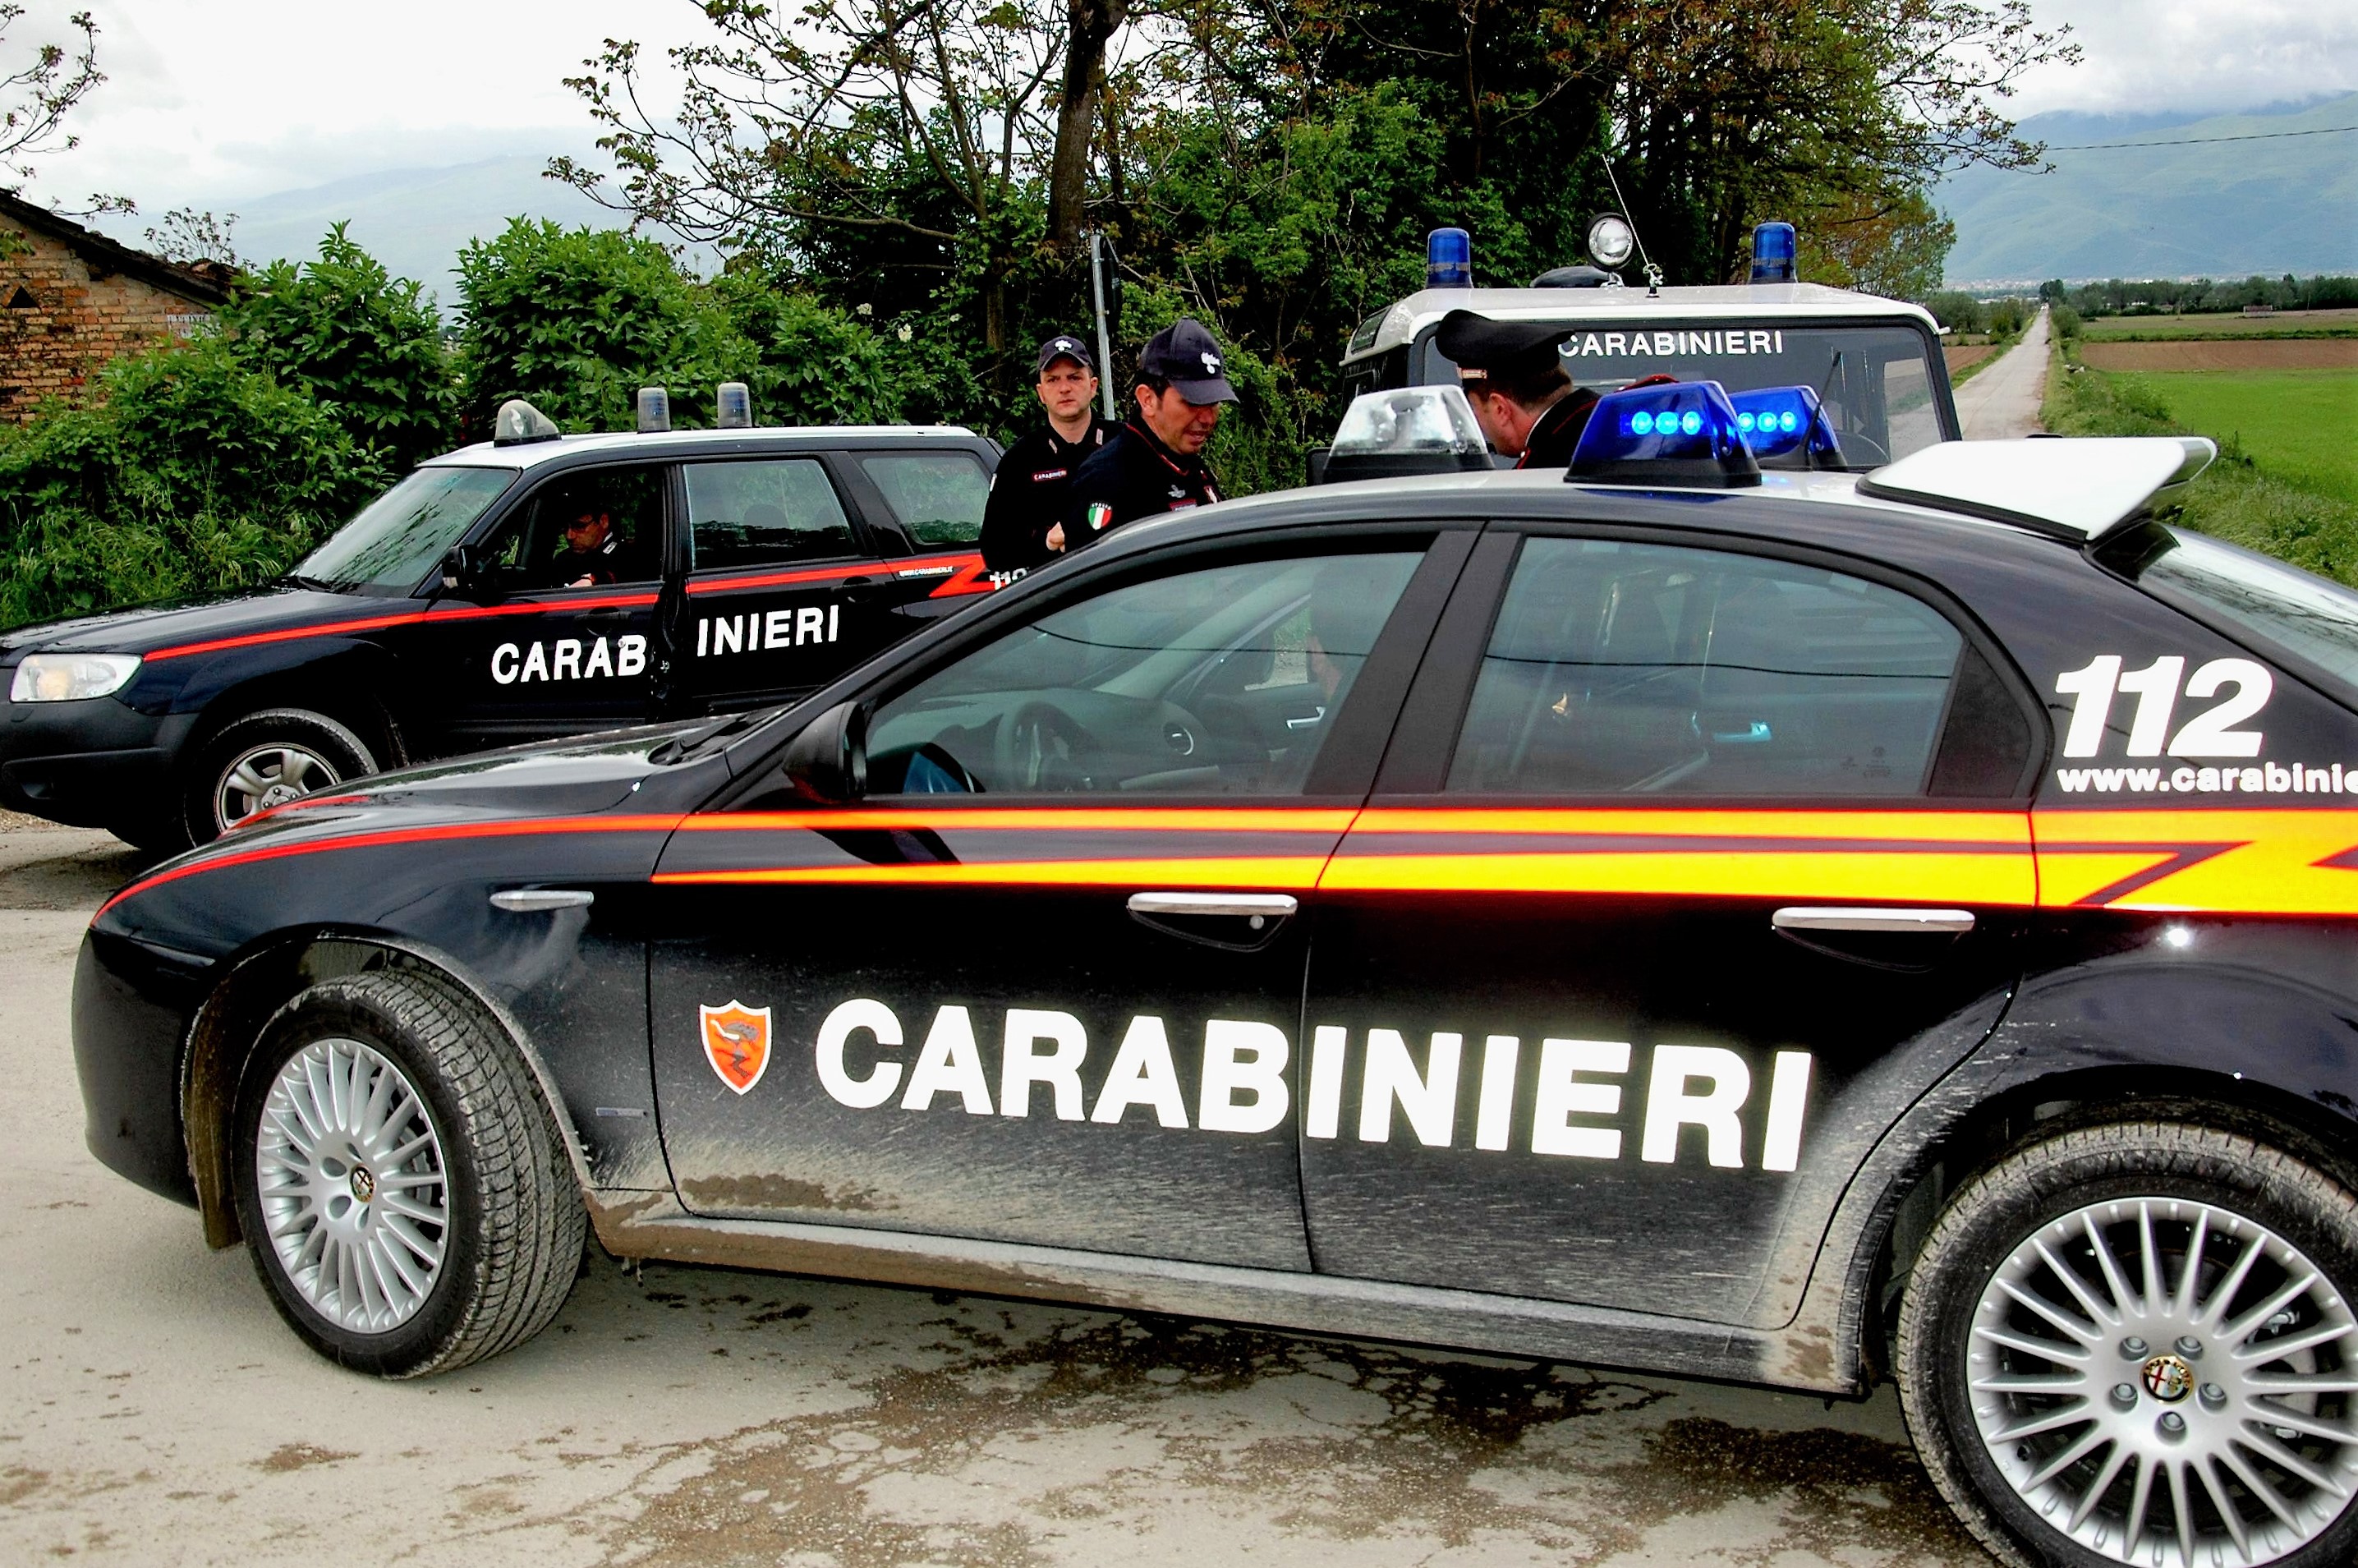 Carabinieri-in-action32